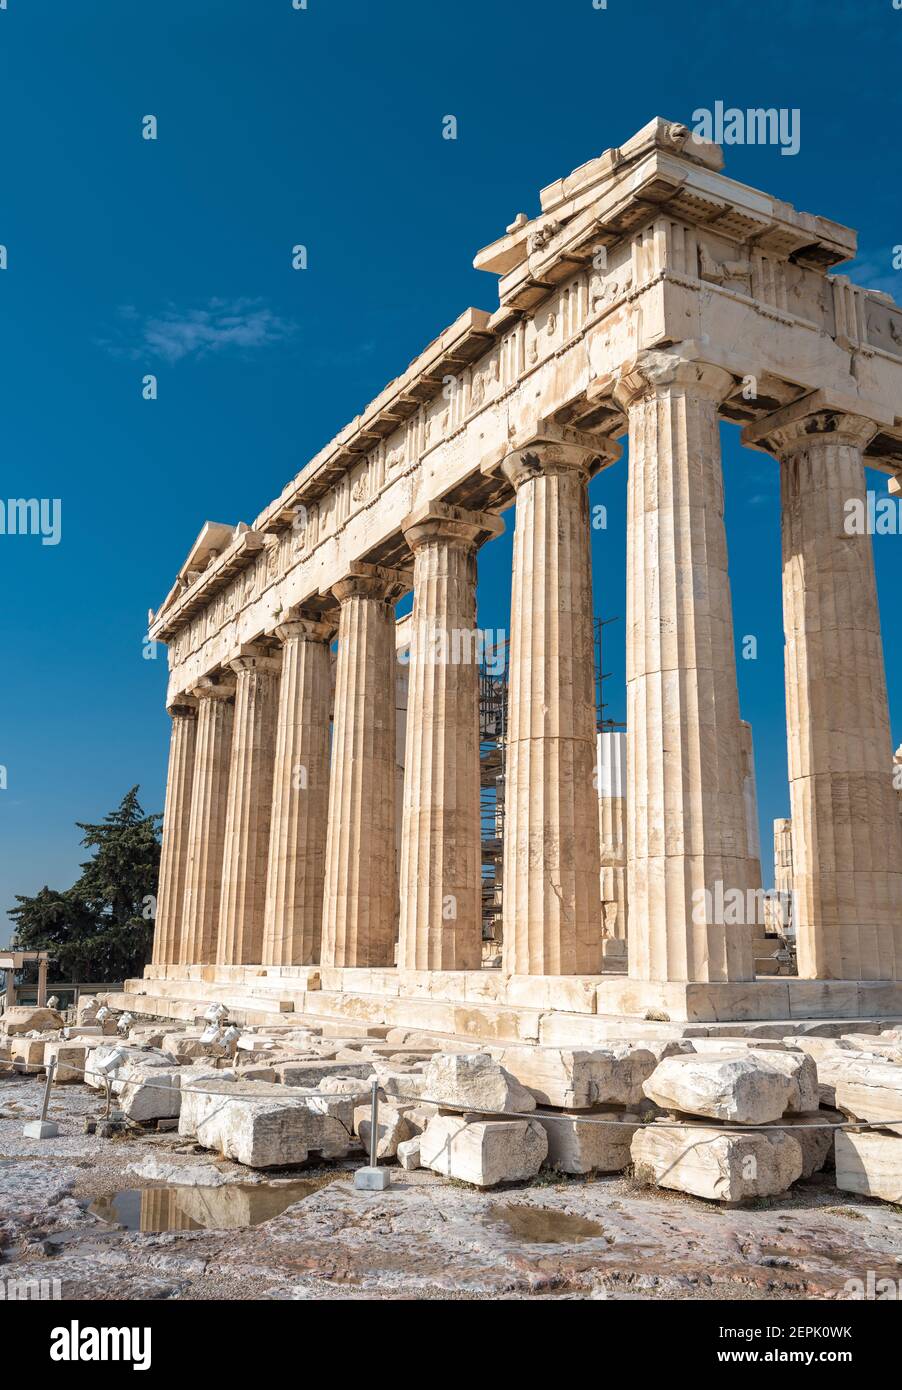 Parthenon Tempel auf Akropolis, Athen, Griechenland. Es ist das Wahrzeichen Athens. Ruinen des berühmten Gebäudes auf Akropolis Hügel, Antike griechische Architektur Stockfoto